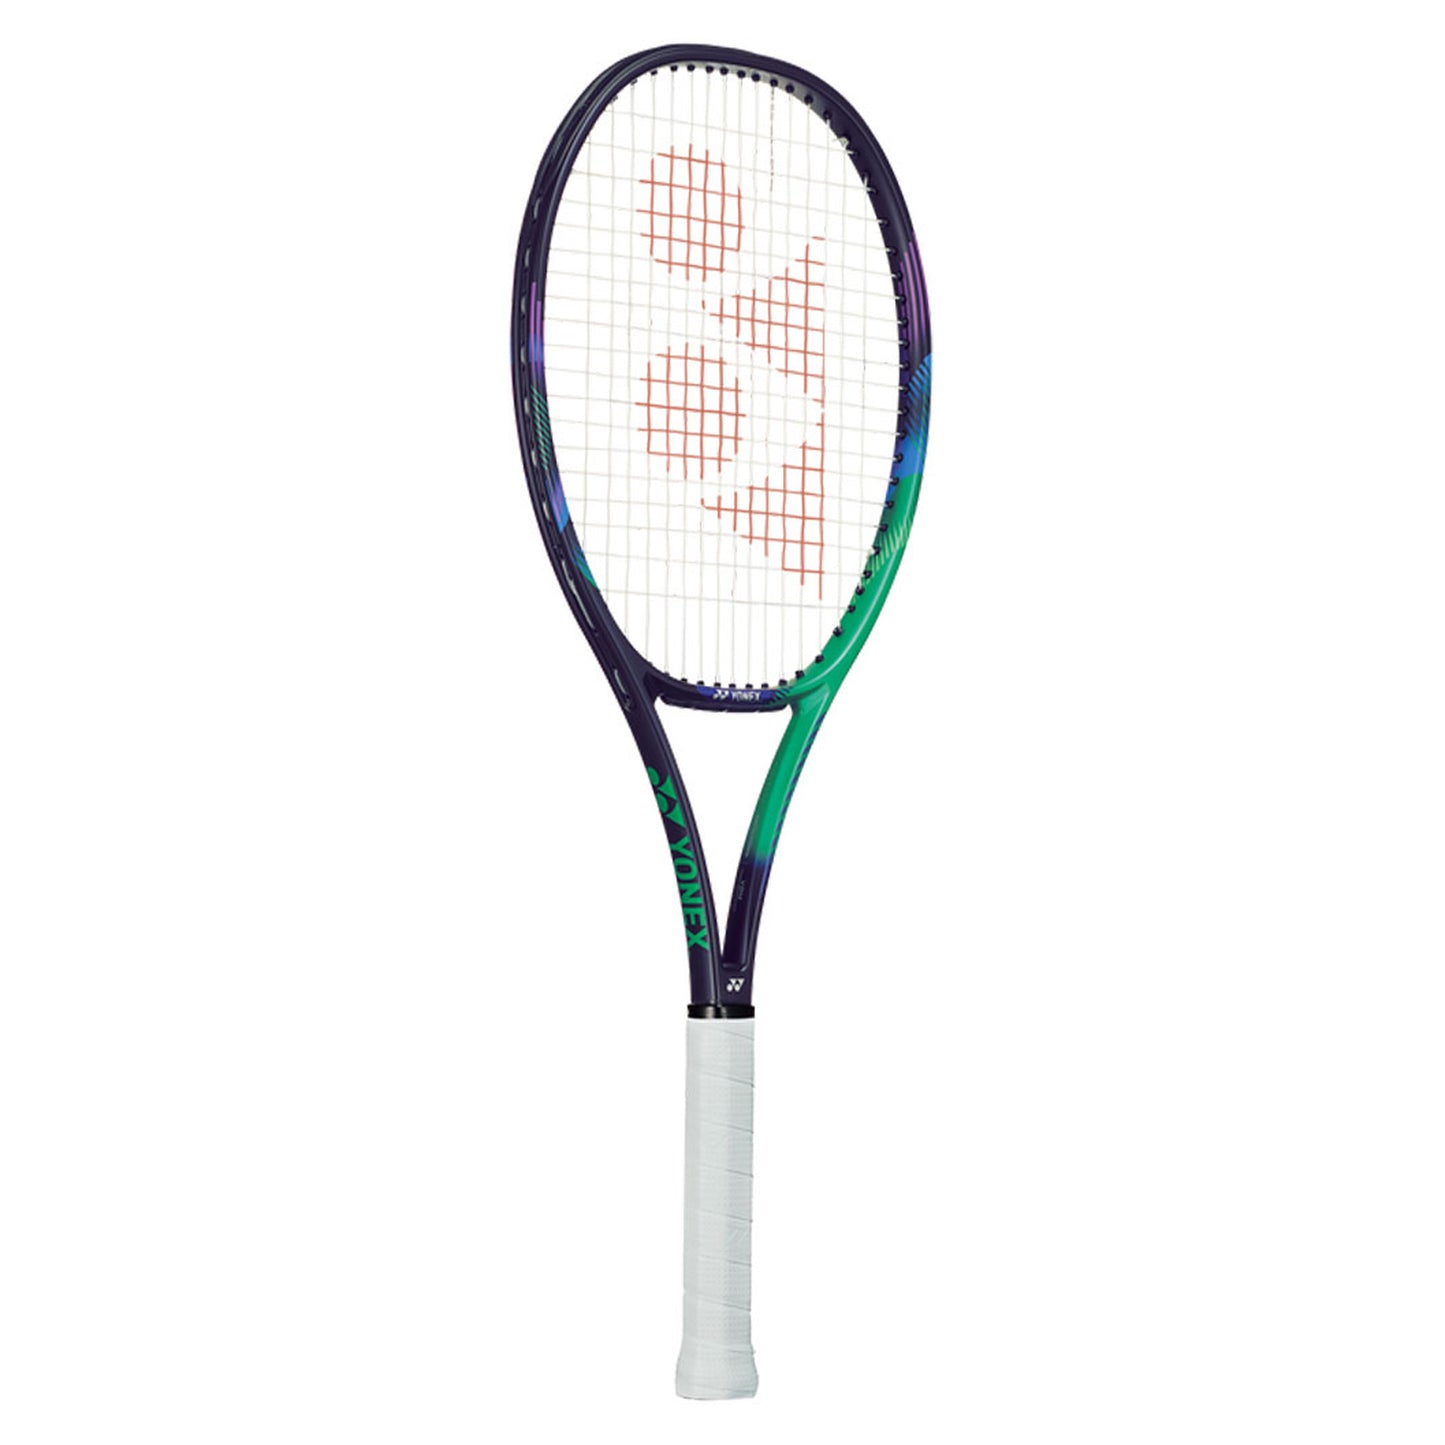 Yonex Vcore Pro 97L Tennis Racquet - Best Price online Prokicksports.com